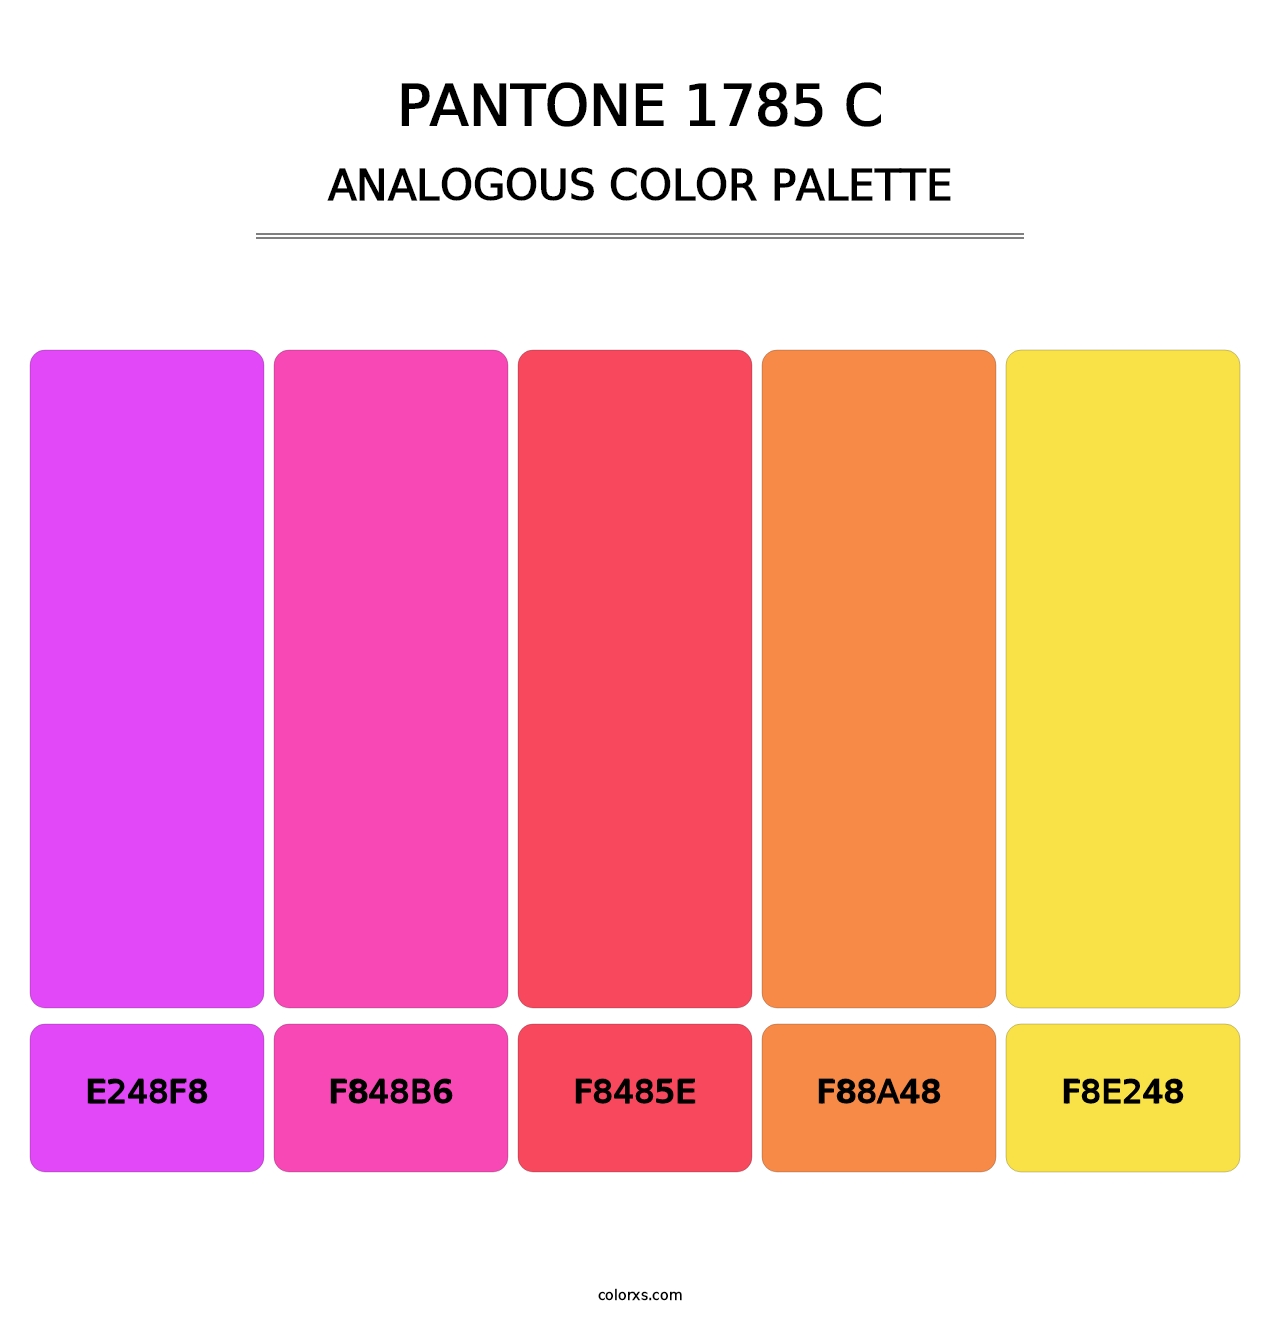 PANTONE 1785 C - Analogous Color Palette